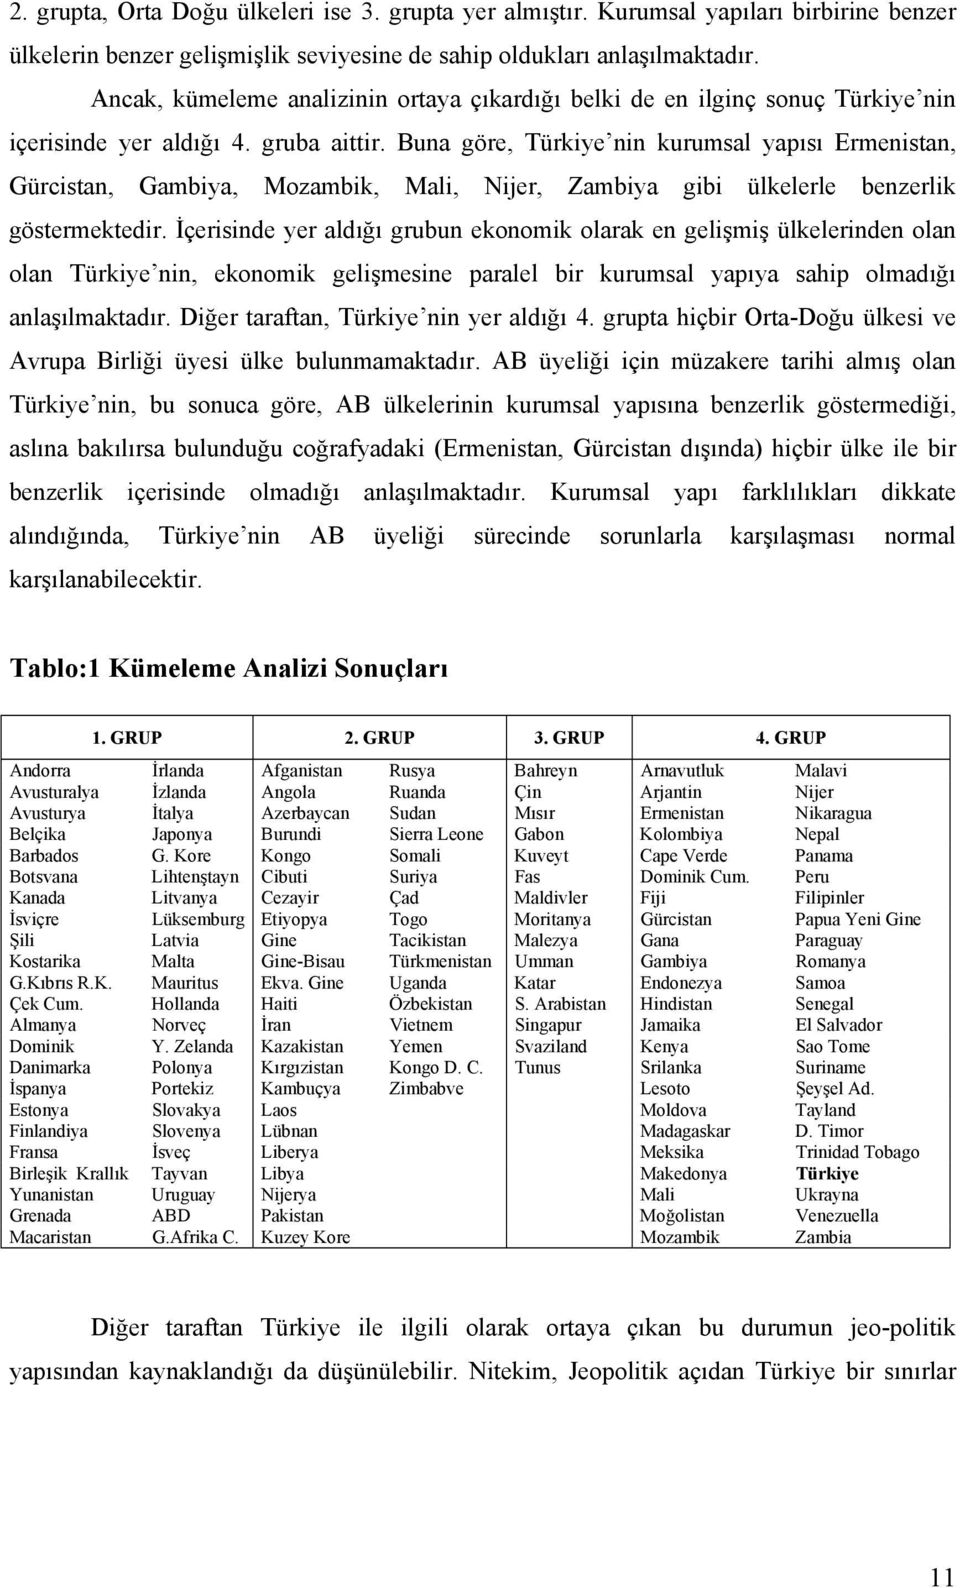 Buna göre, Türkiye nin kurumsal yapısı Ermenistan, Gürcistan, Gambiya, Mozambik, Mali, Nijer, Zambiya gibi ülkelerle benzerlik göstermektedir.